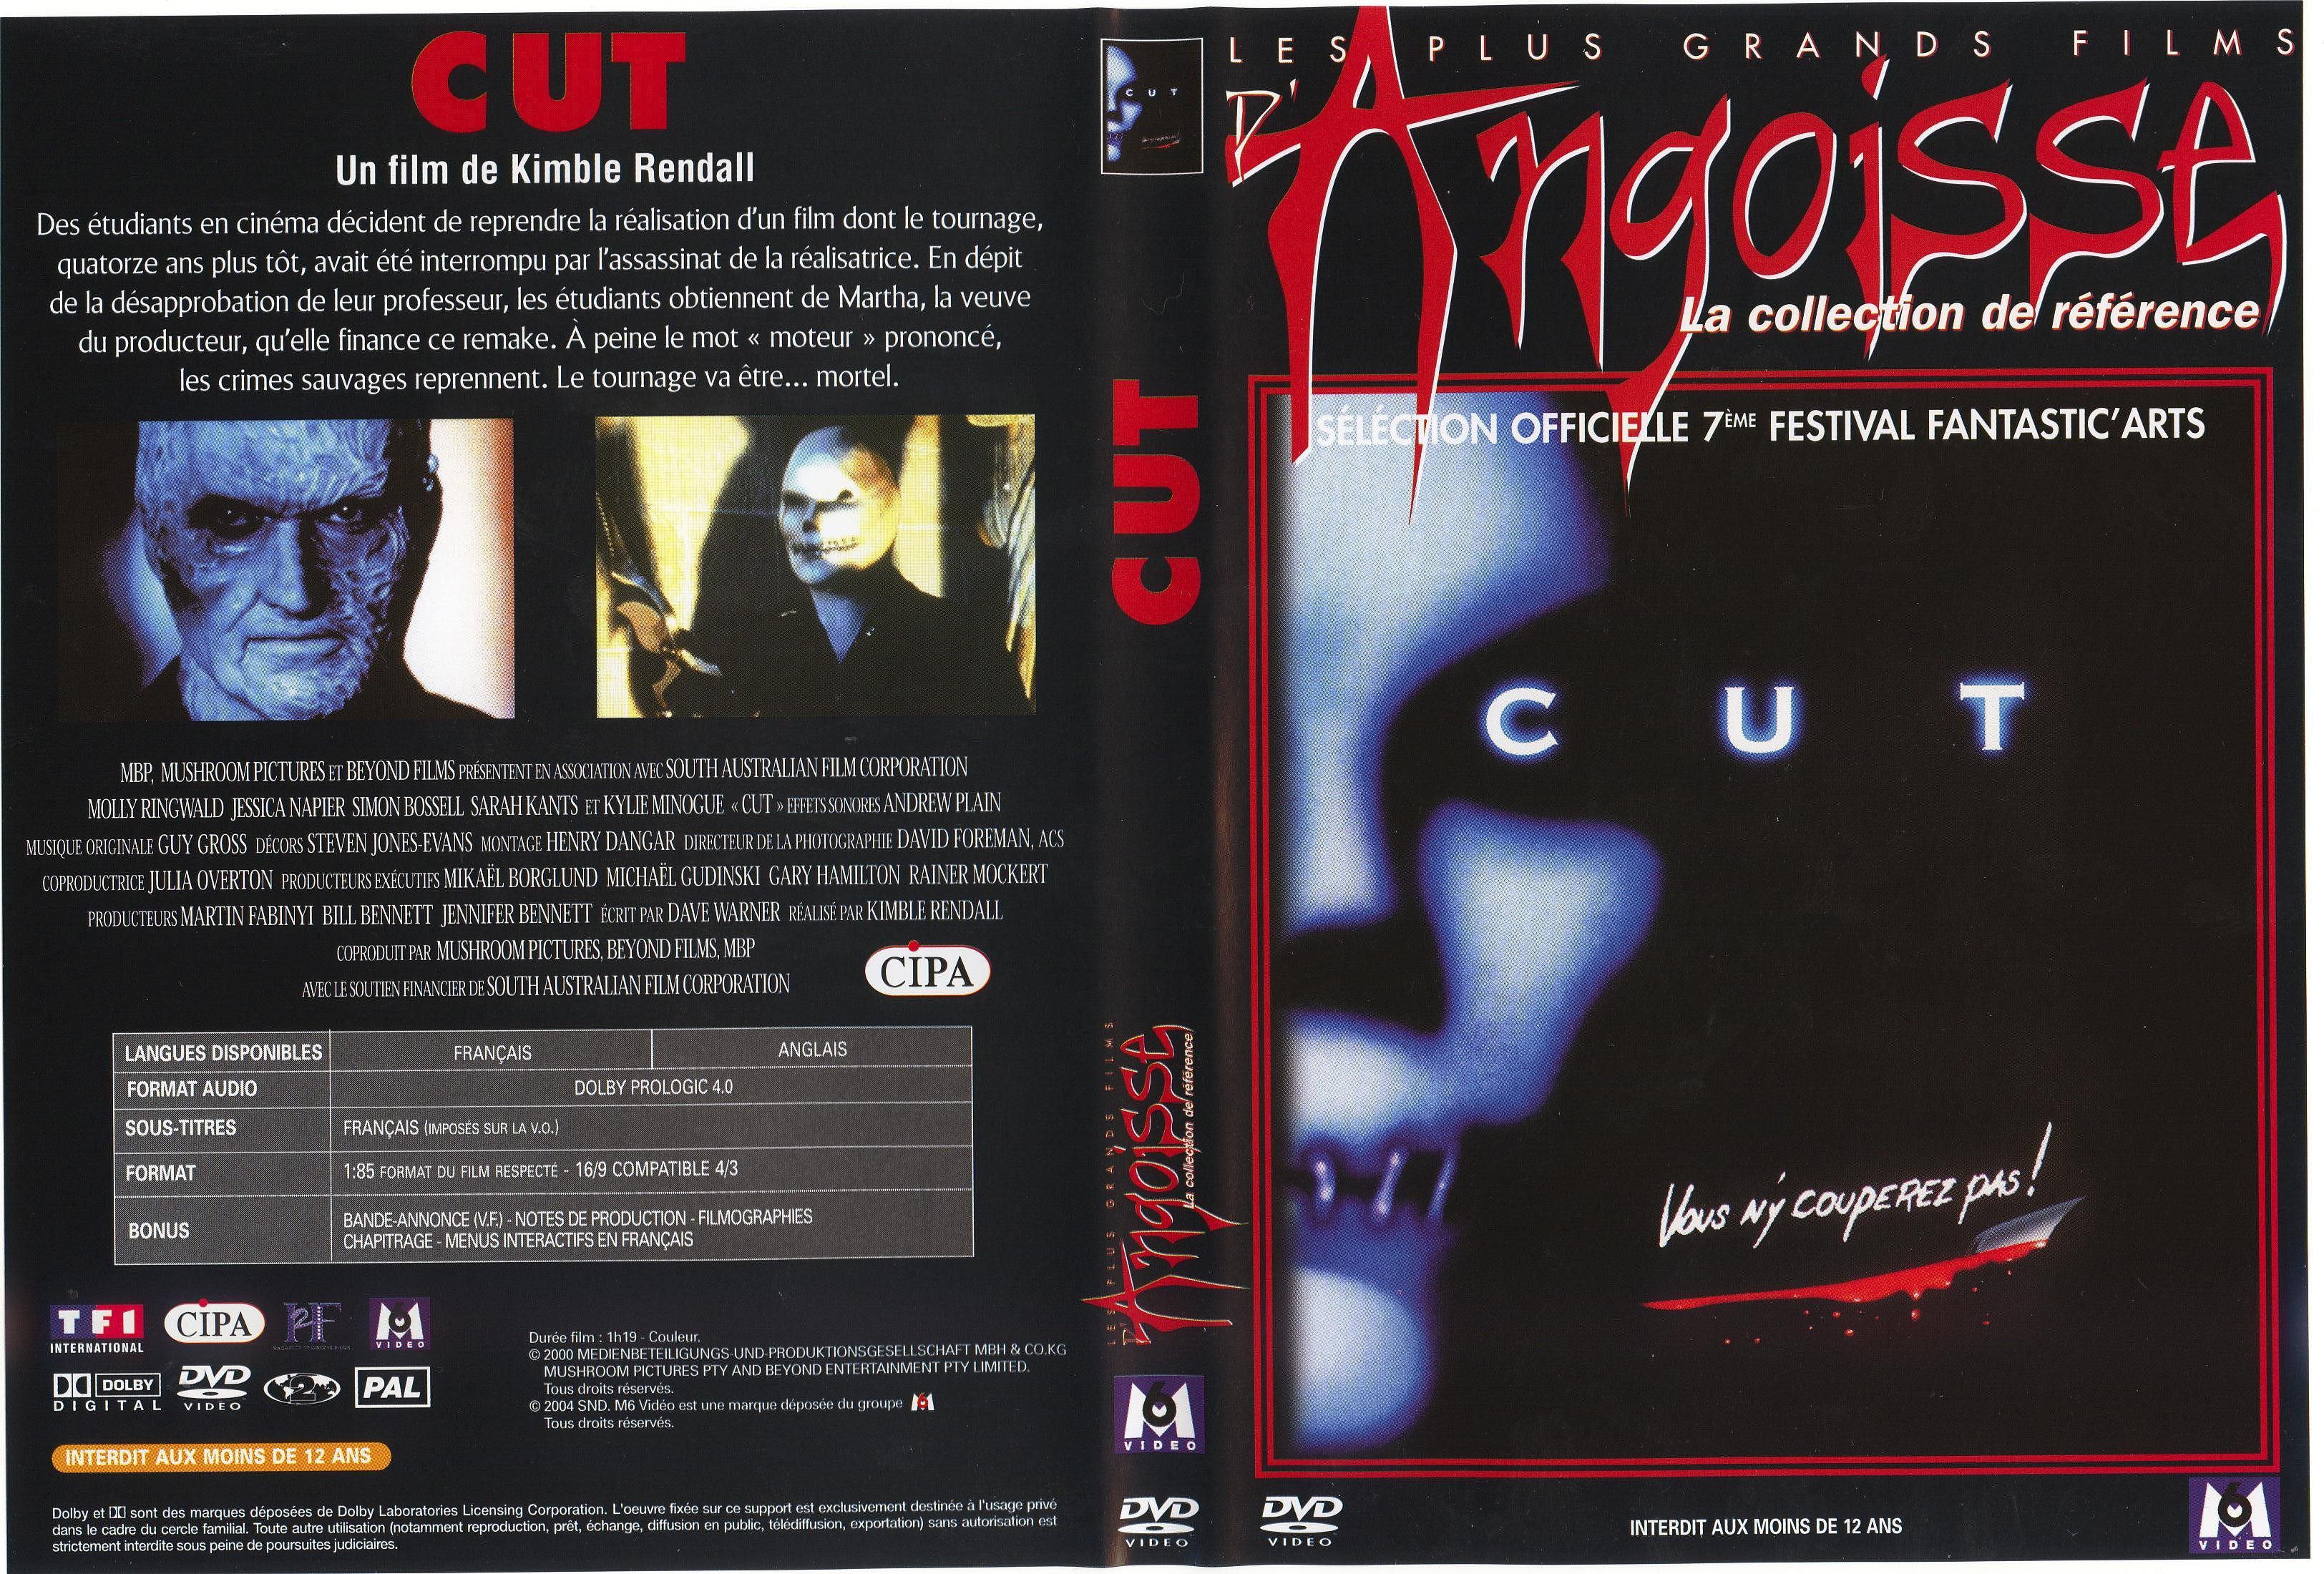 Jaquette DVD Cut v3